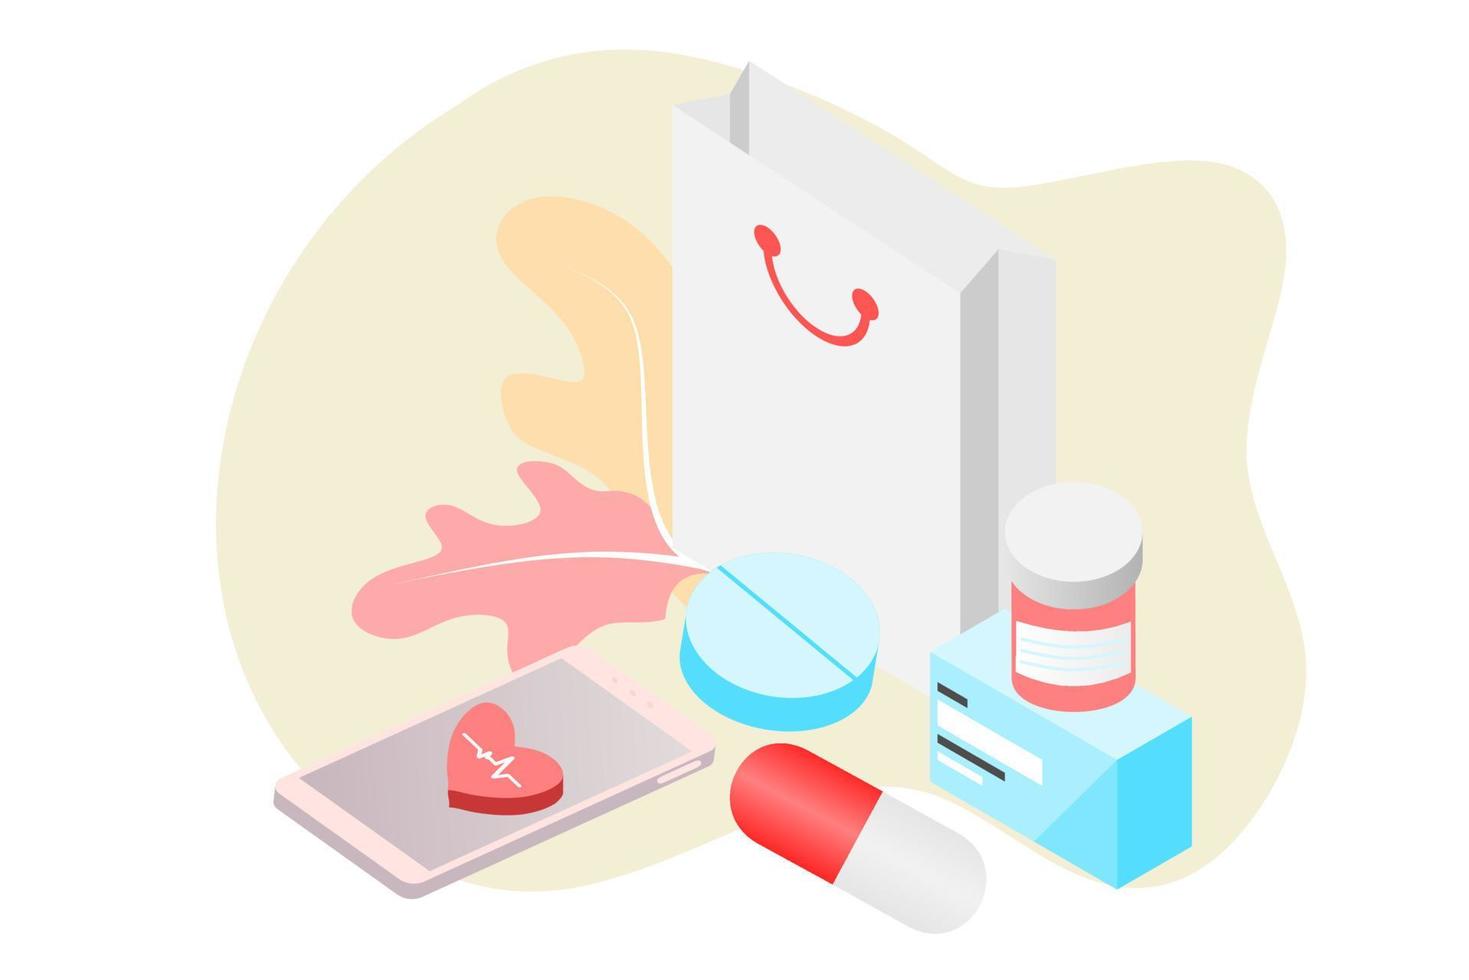 Online-Apotheken-App-Konzept für Gesundheitswesen, Drogerie und E-Commerce. vektorillustration von verschreibungspflichtigen medikamenten, erste-hilfe-kits und medizinischen artikeln, die online über web- oder computertechnologie verkauft werden. vektor